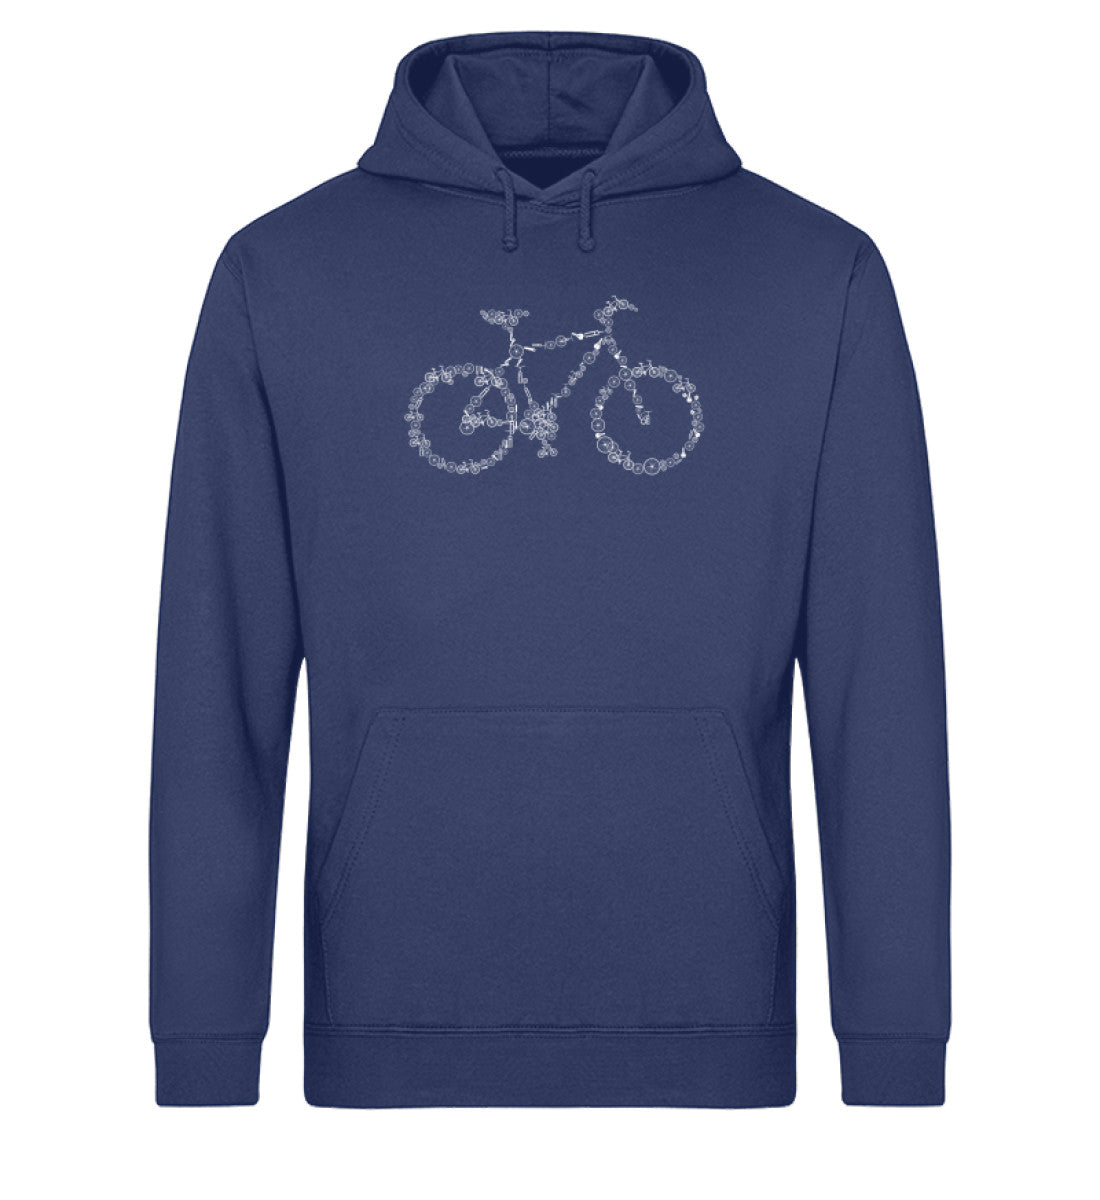 Fahrrad Kollektiv - Unisex Organic Hoodie fahrrad mountainbike Navyblau